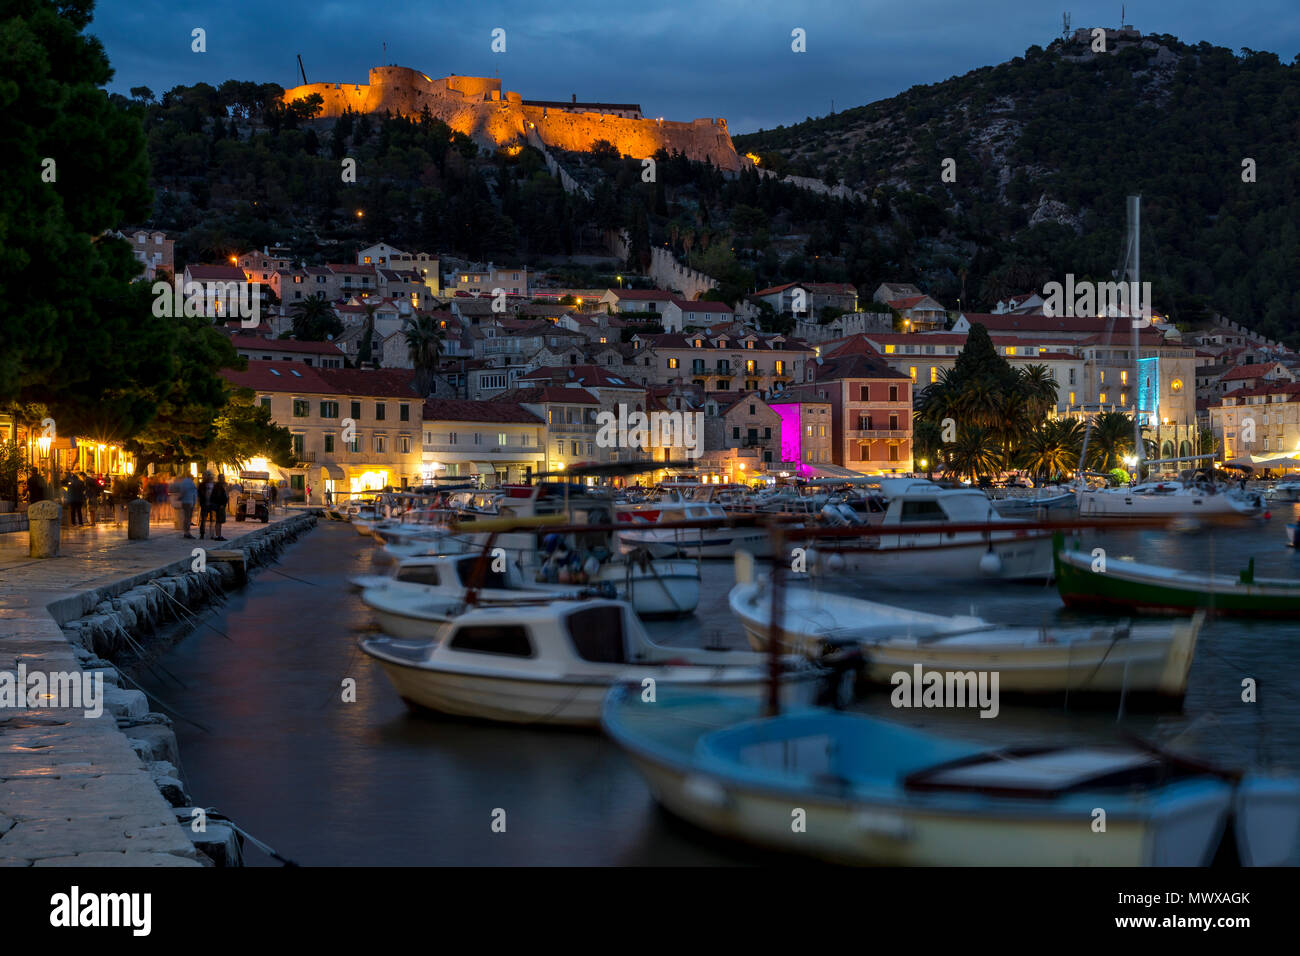 Le port de la ville de Hvar et la forteresse espagnole au crépuscule, Hvar, Croatie, Europe Banque D'Images